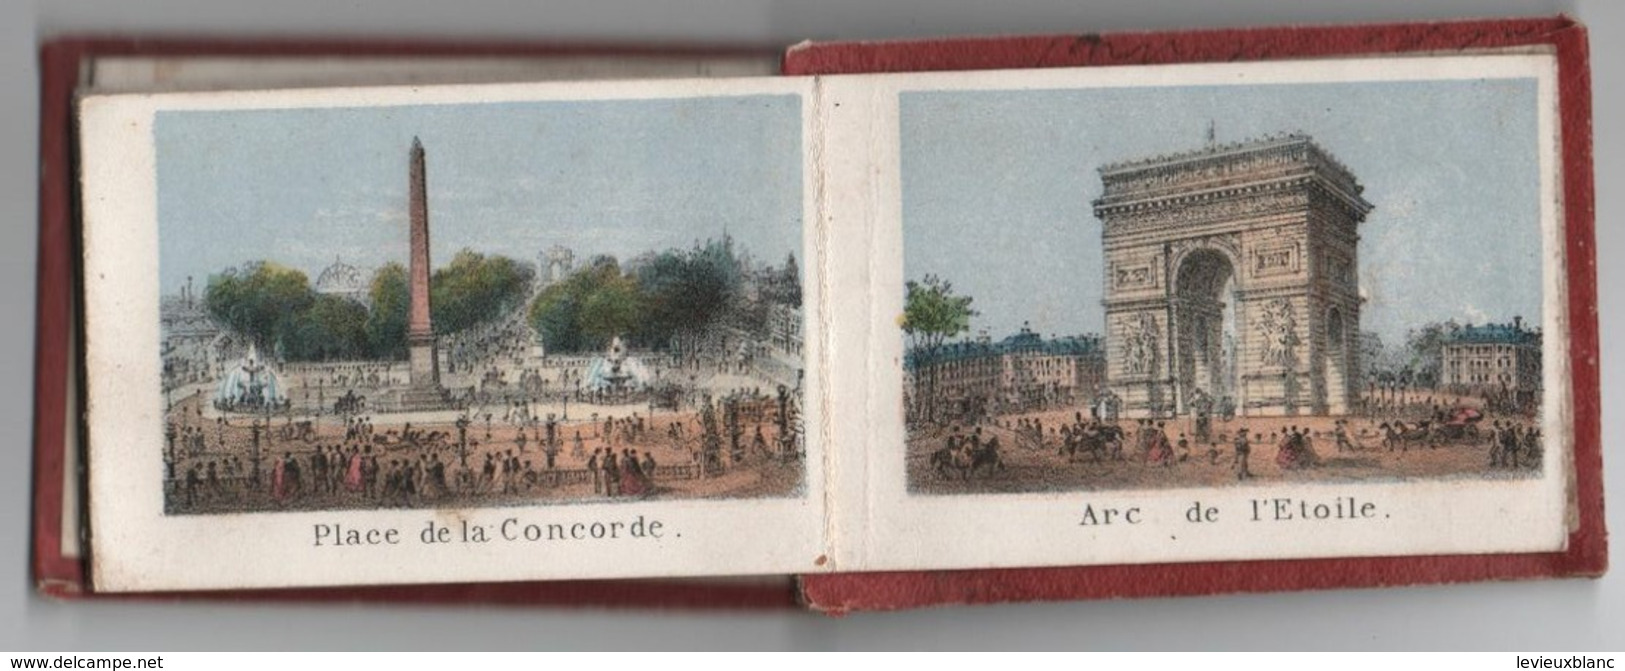 Petit livret souvenir de PARIS/10 Gravures:Madeleine,Bourse,Louvre,OpéraTTuileries,Vendôme,Etoile,etc/Vers 1858  NAP14